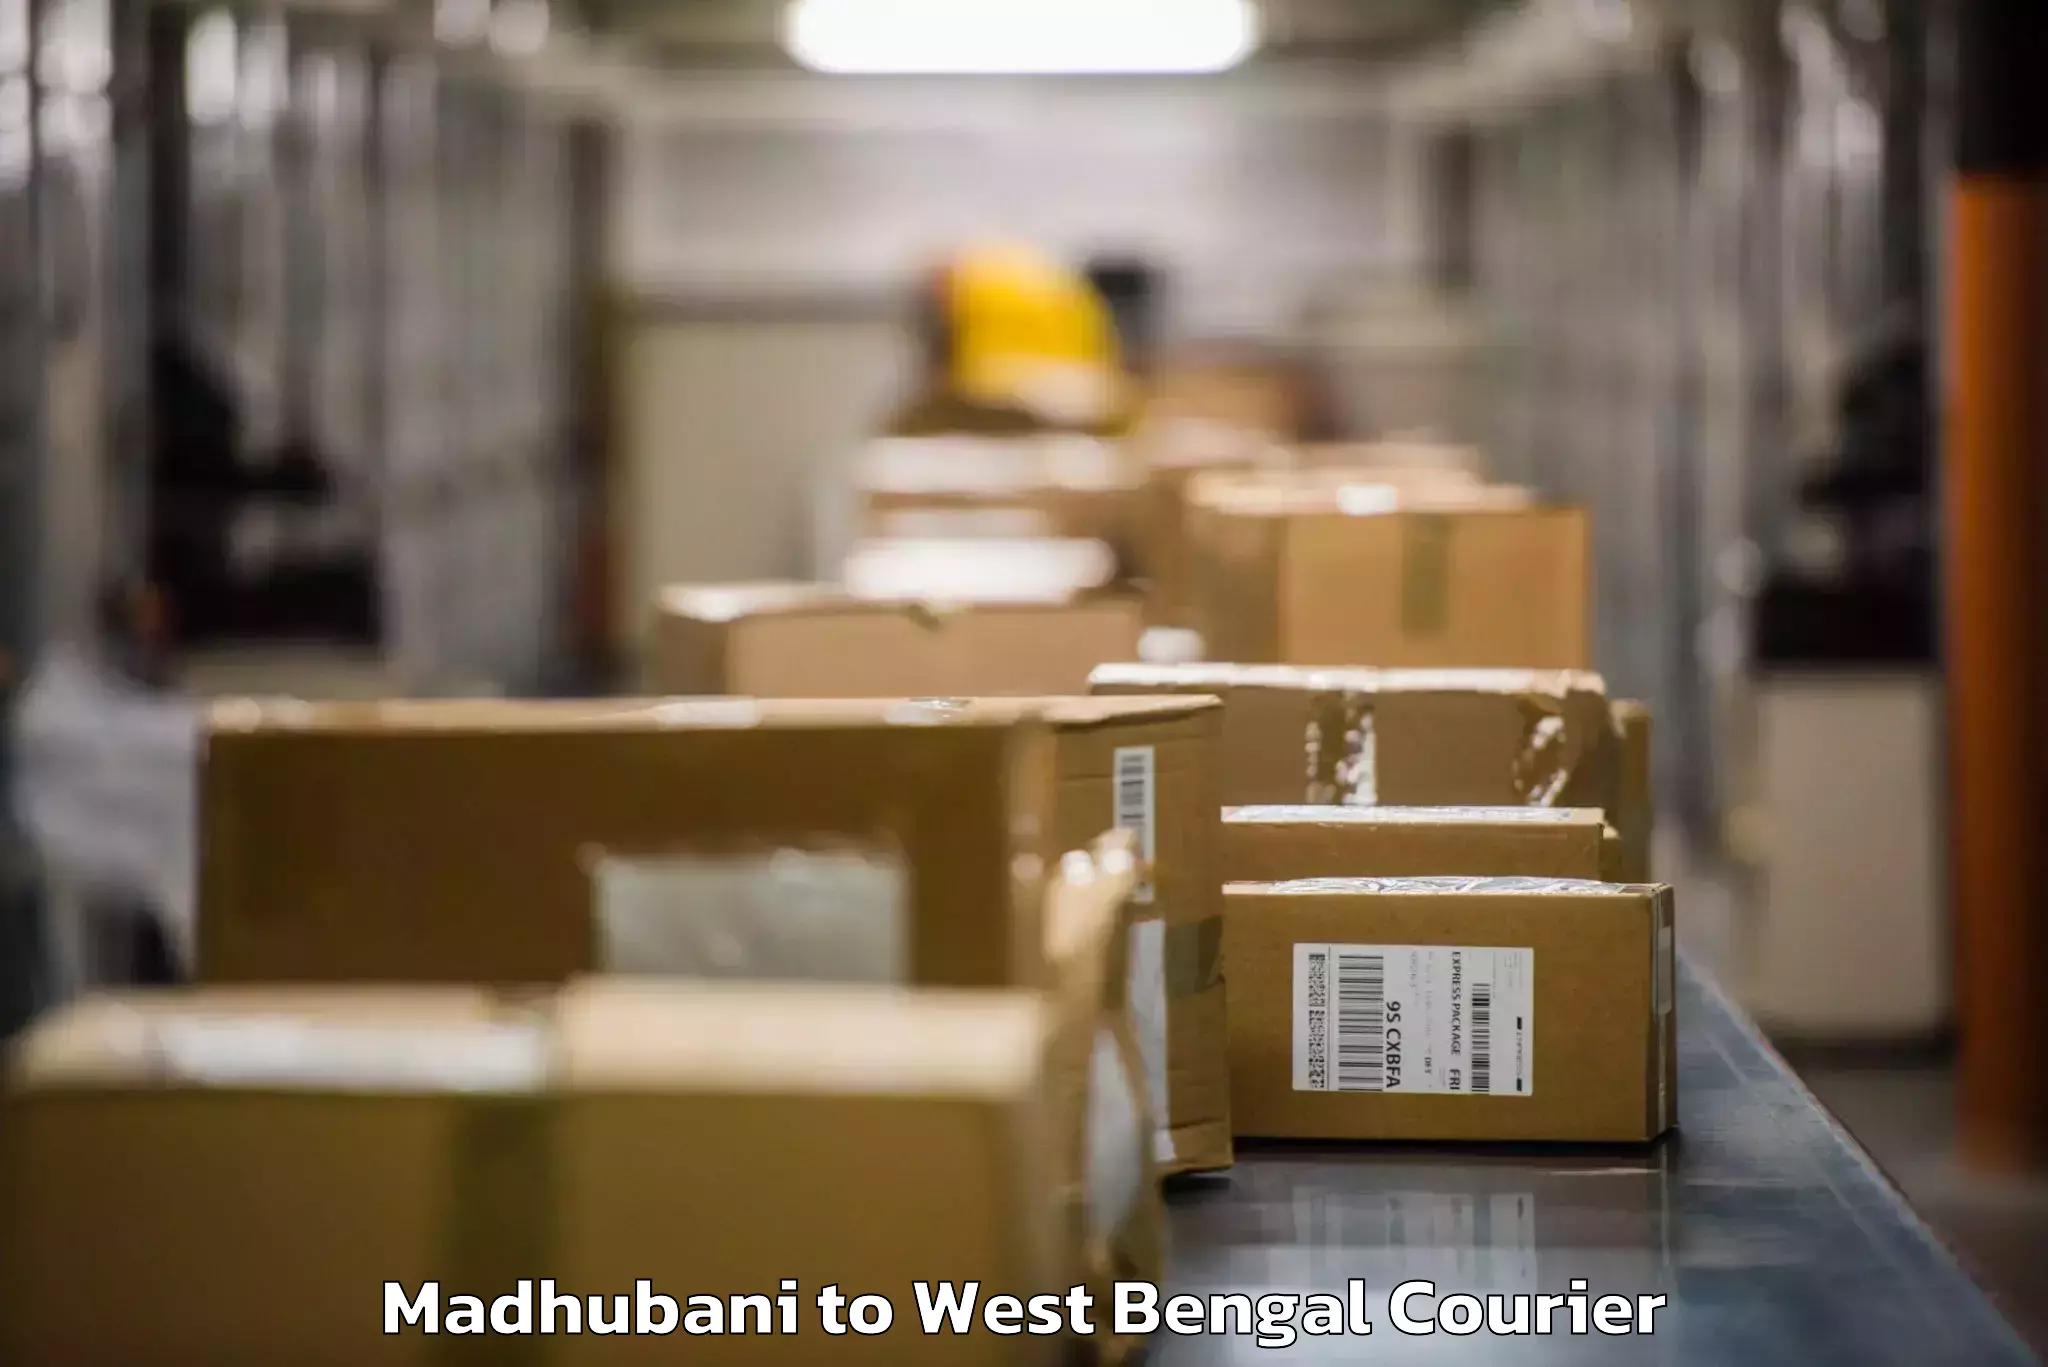 Luggage transport company Madhubani to West Bengal